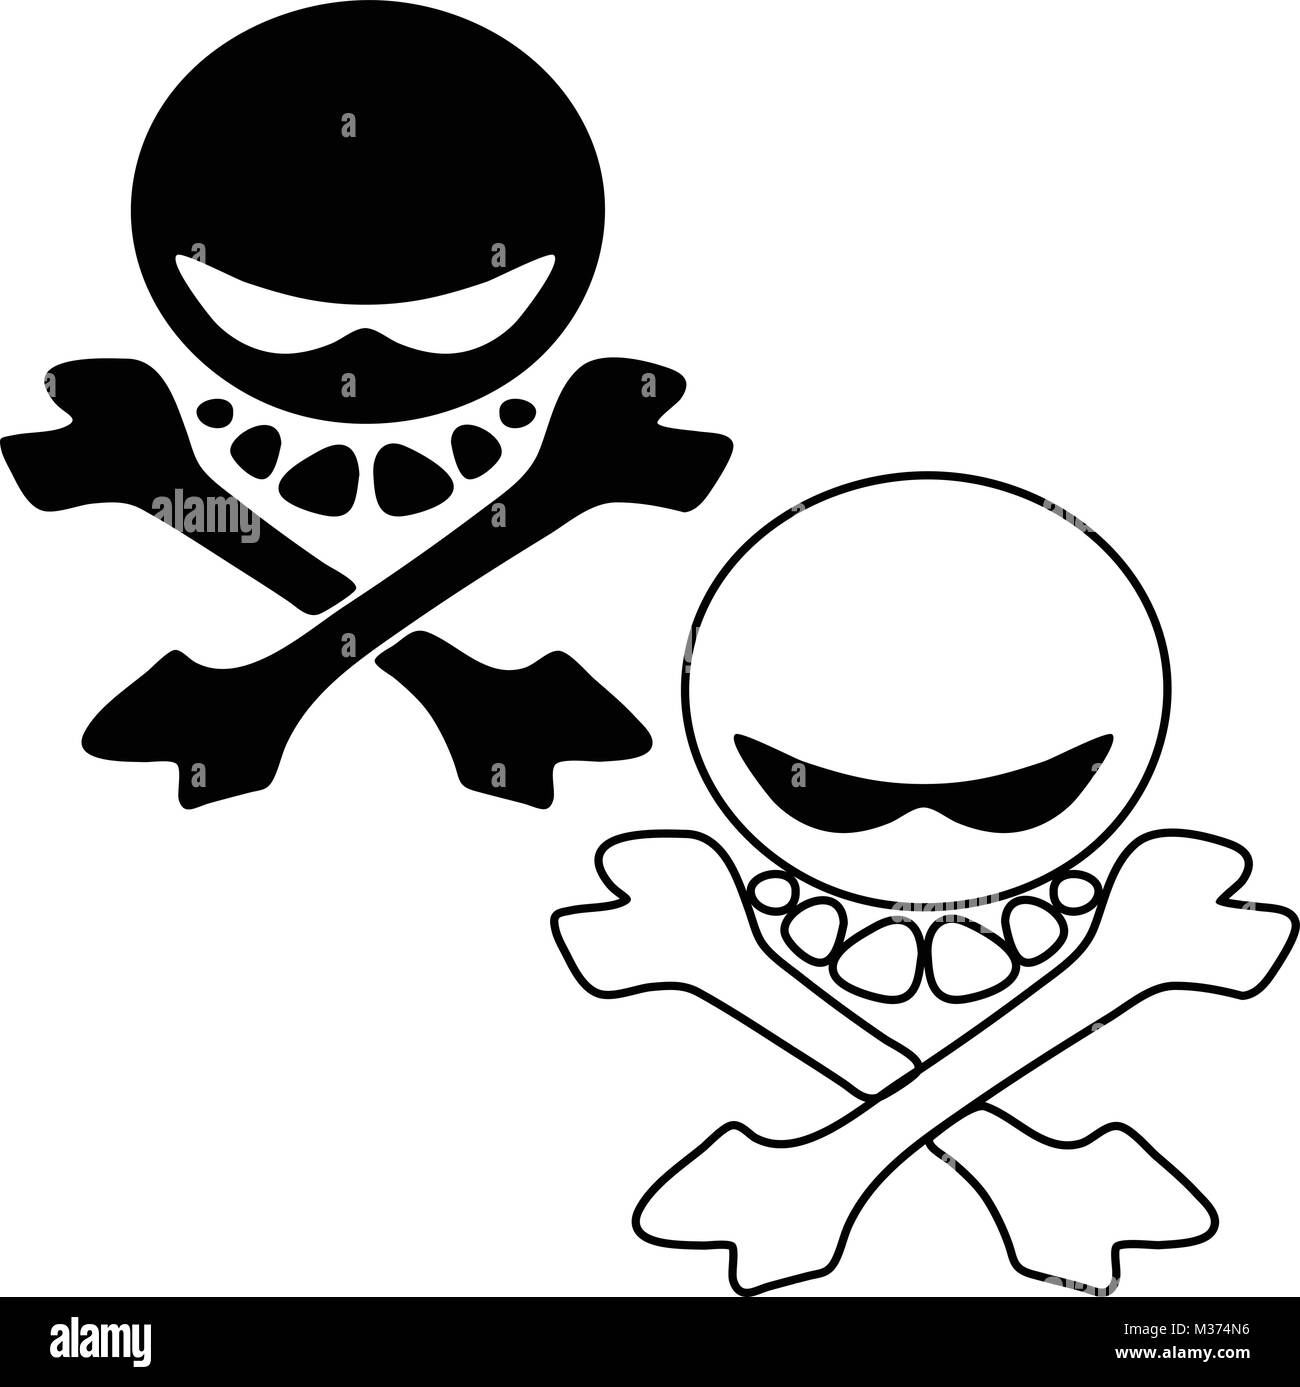 Cartoon skull and cross bones vector logo illustration Stock Vector